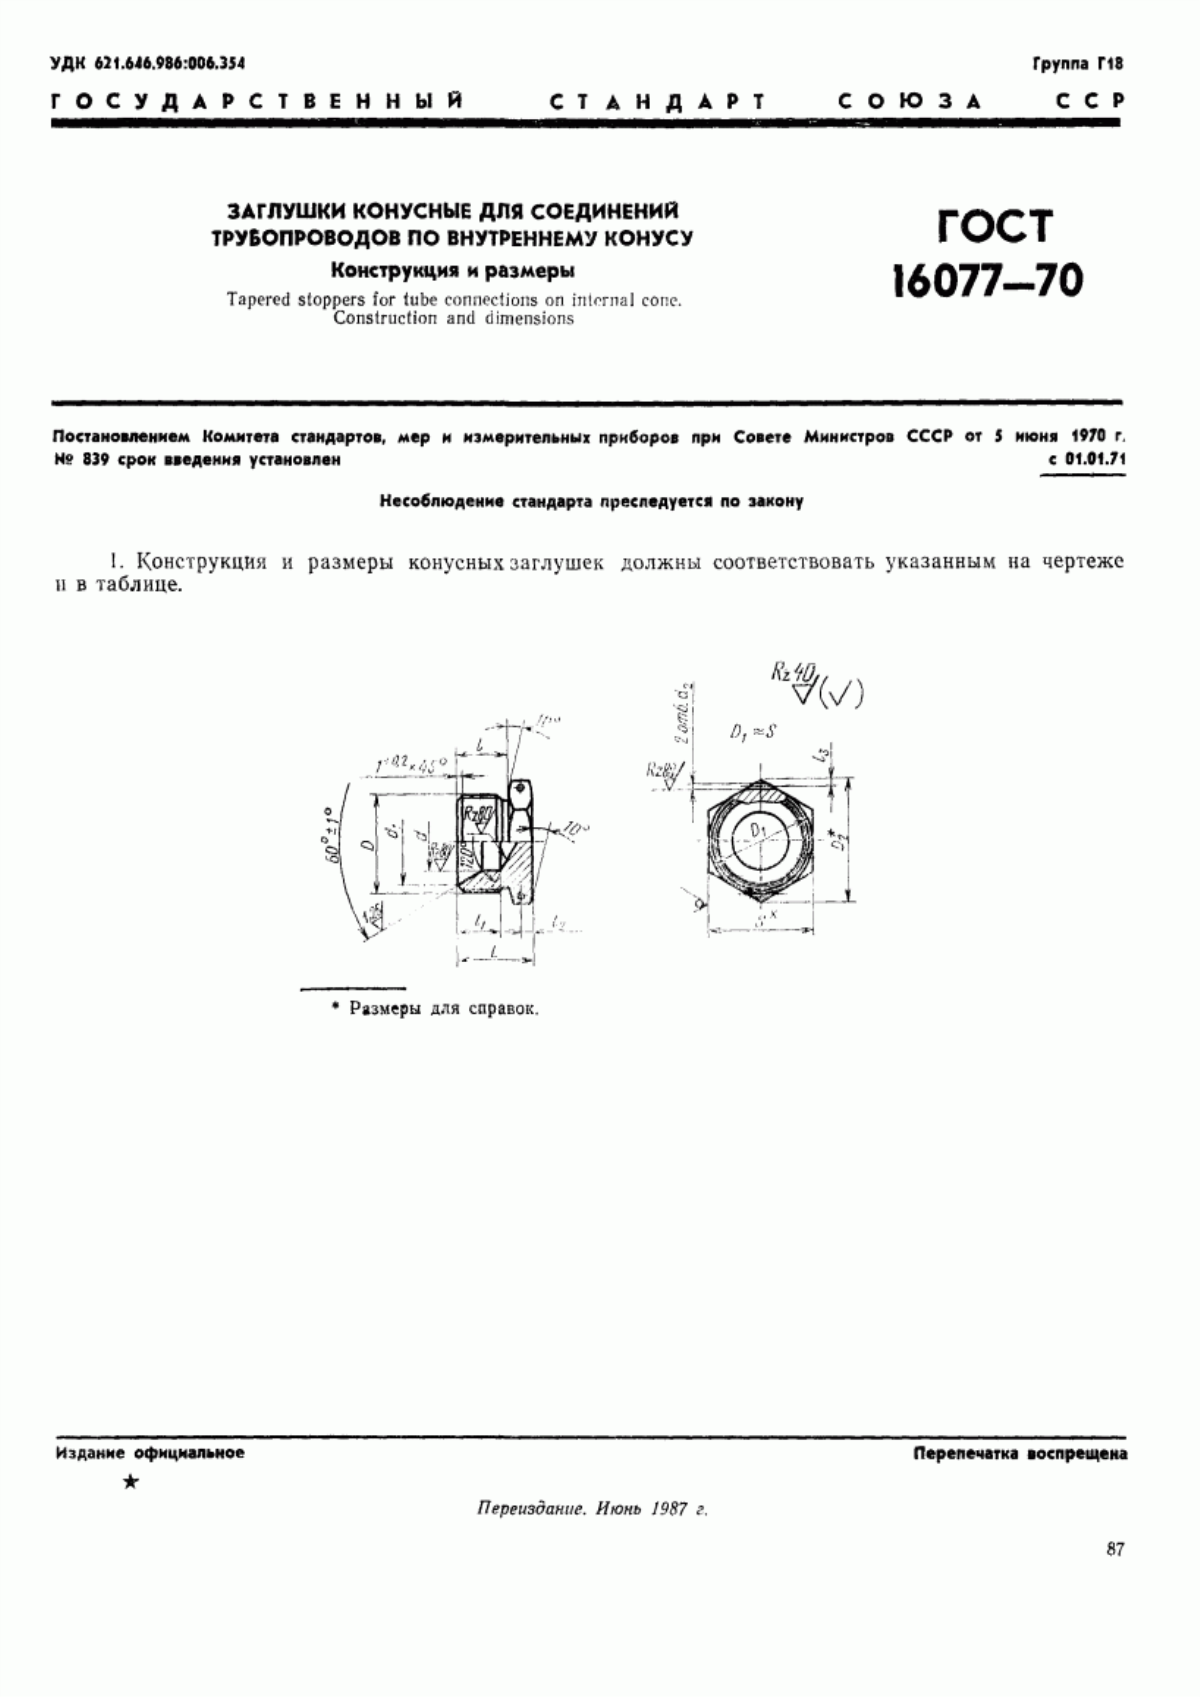 ГОСТ 16077-70 Заглушки конусные для соединений трубопроводов по внутреннему конусу. Конструкция и размеры